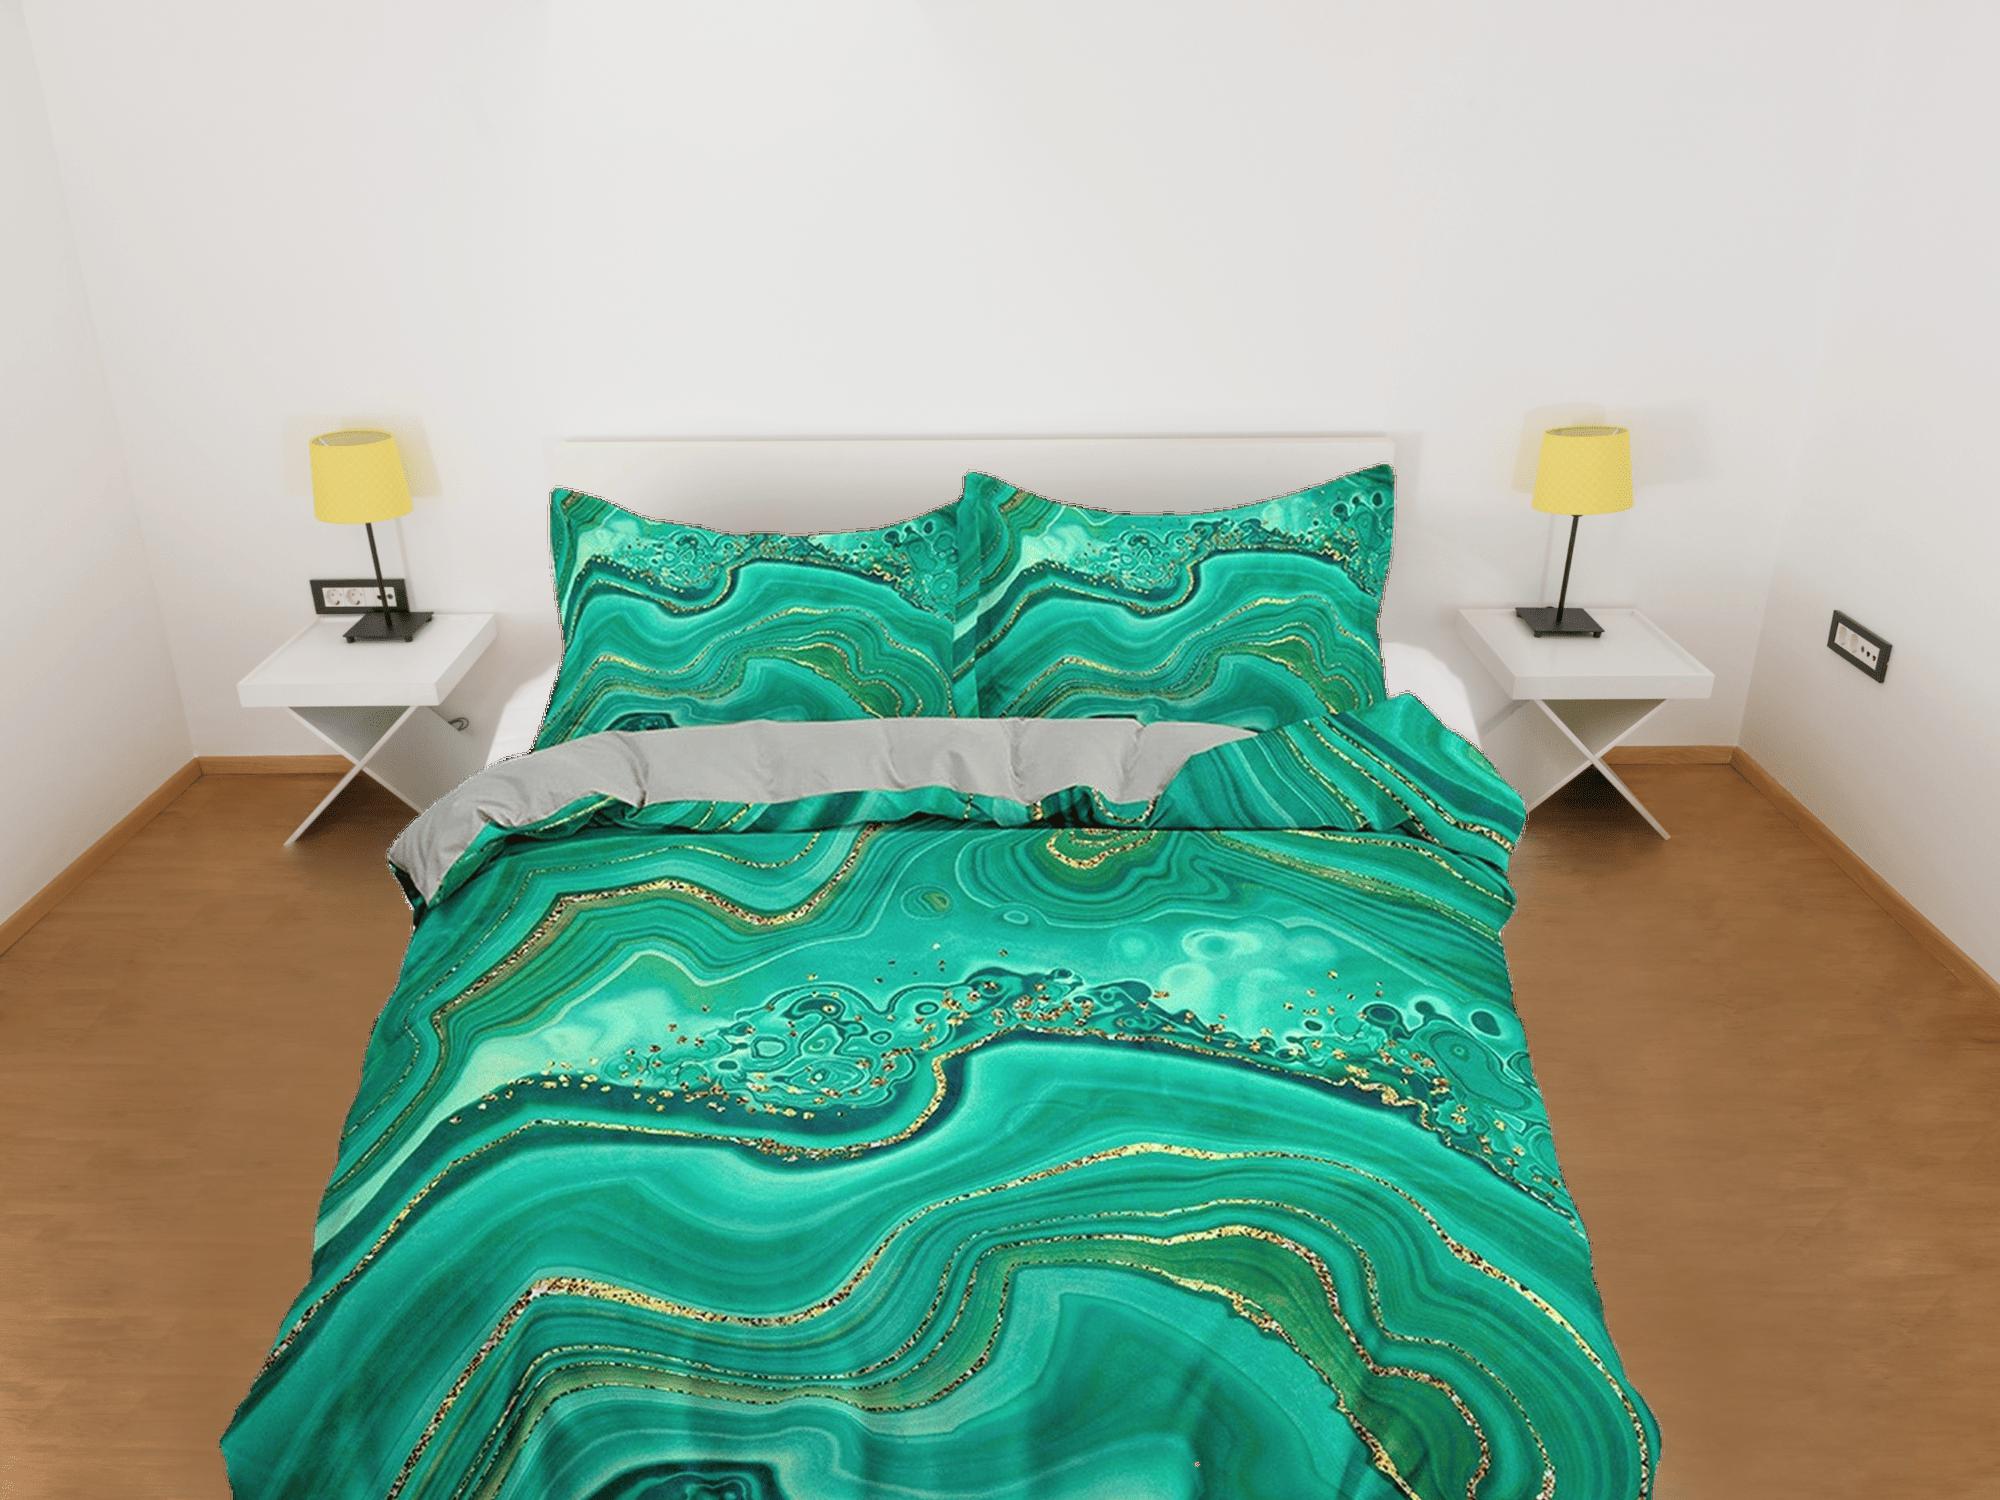 daintyduvet Contemporary bedroom set aesthetic duvet cover green, luxury duvet gold marble abstract art room decor boho chic bedding set full king queen